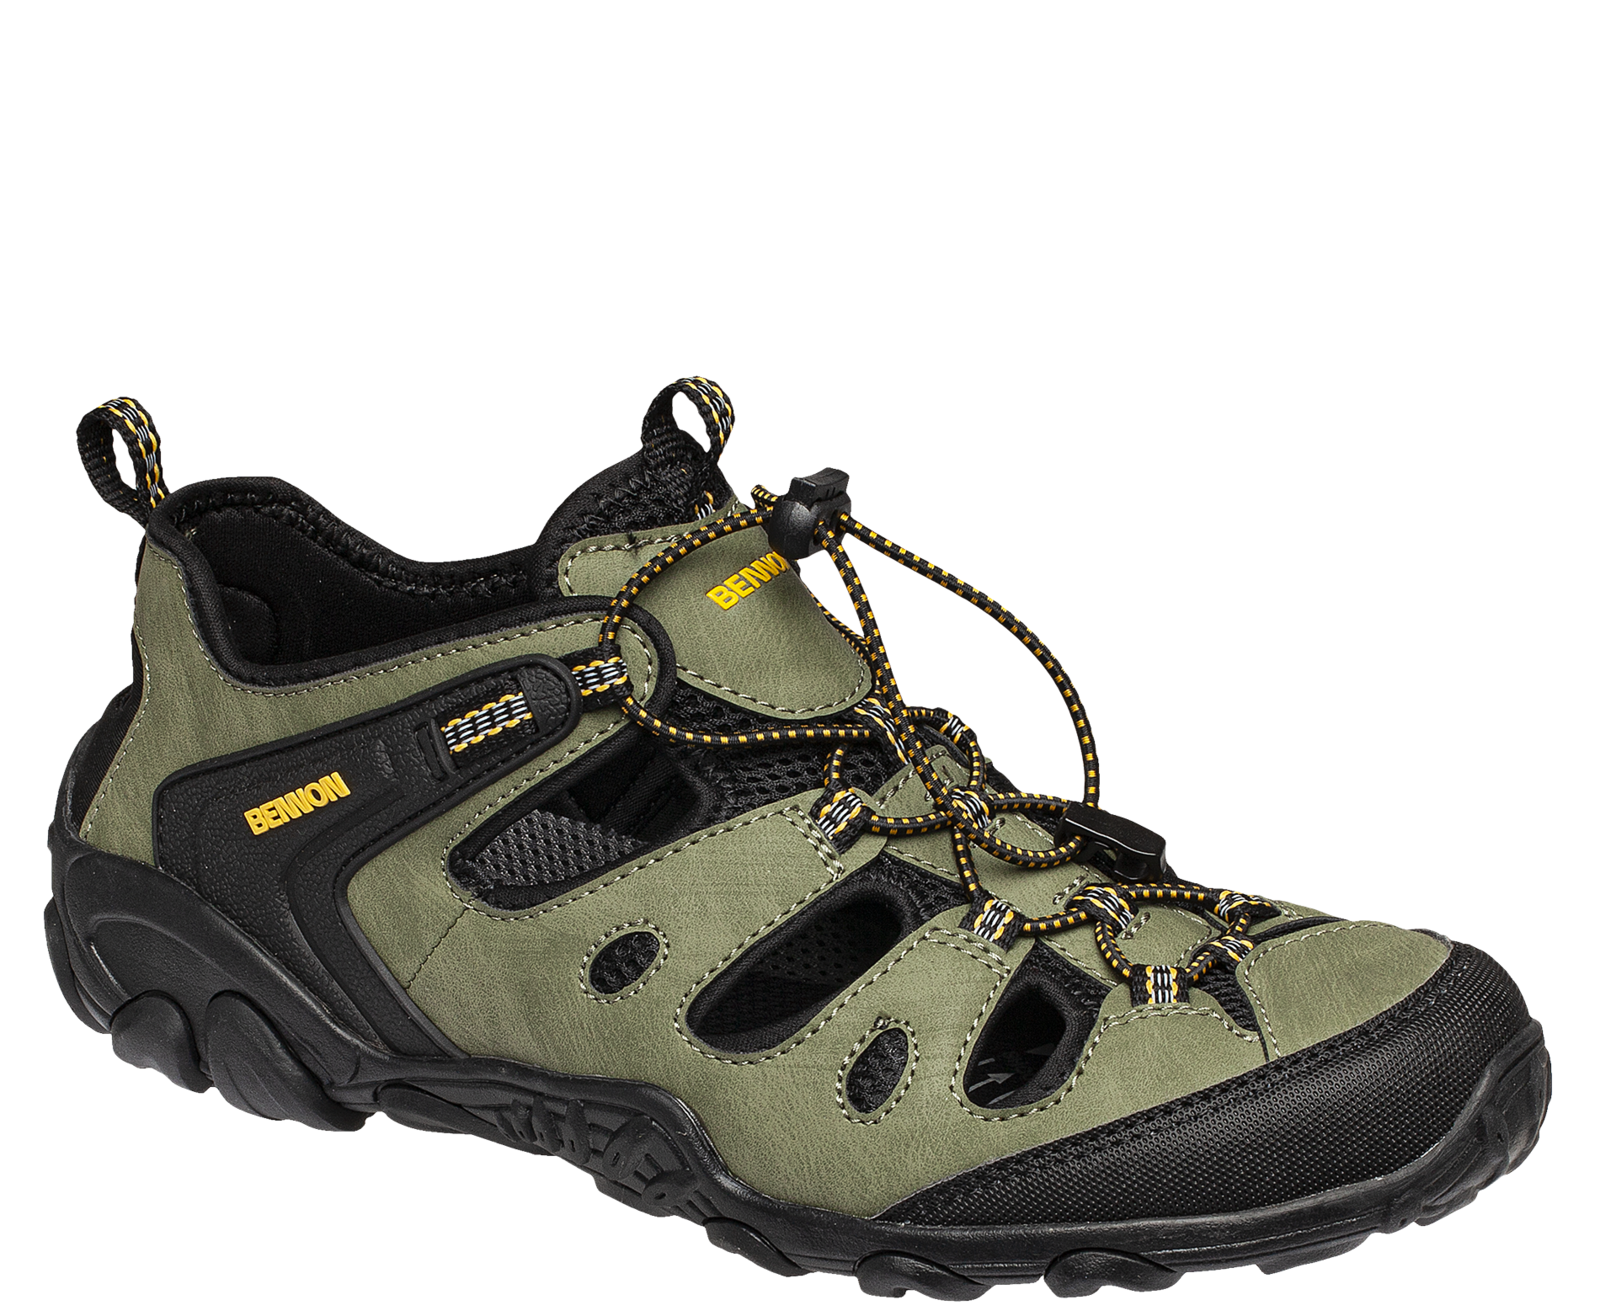 Outdoorové sandále Bennon Clifton - veľkosť: 37, farba: zelená